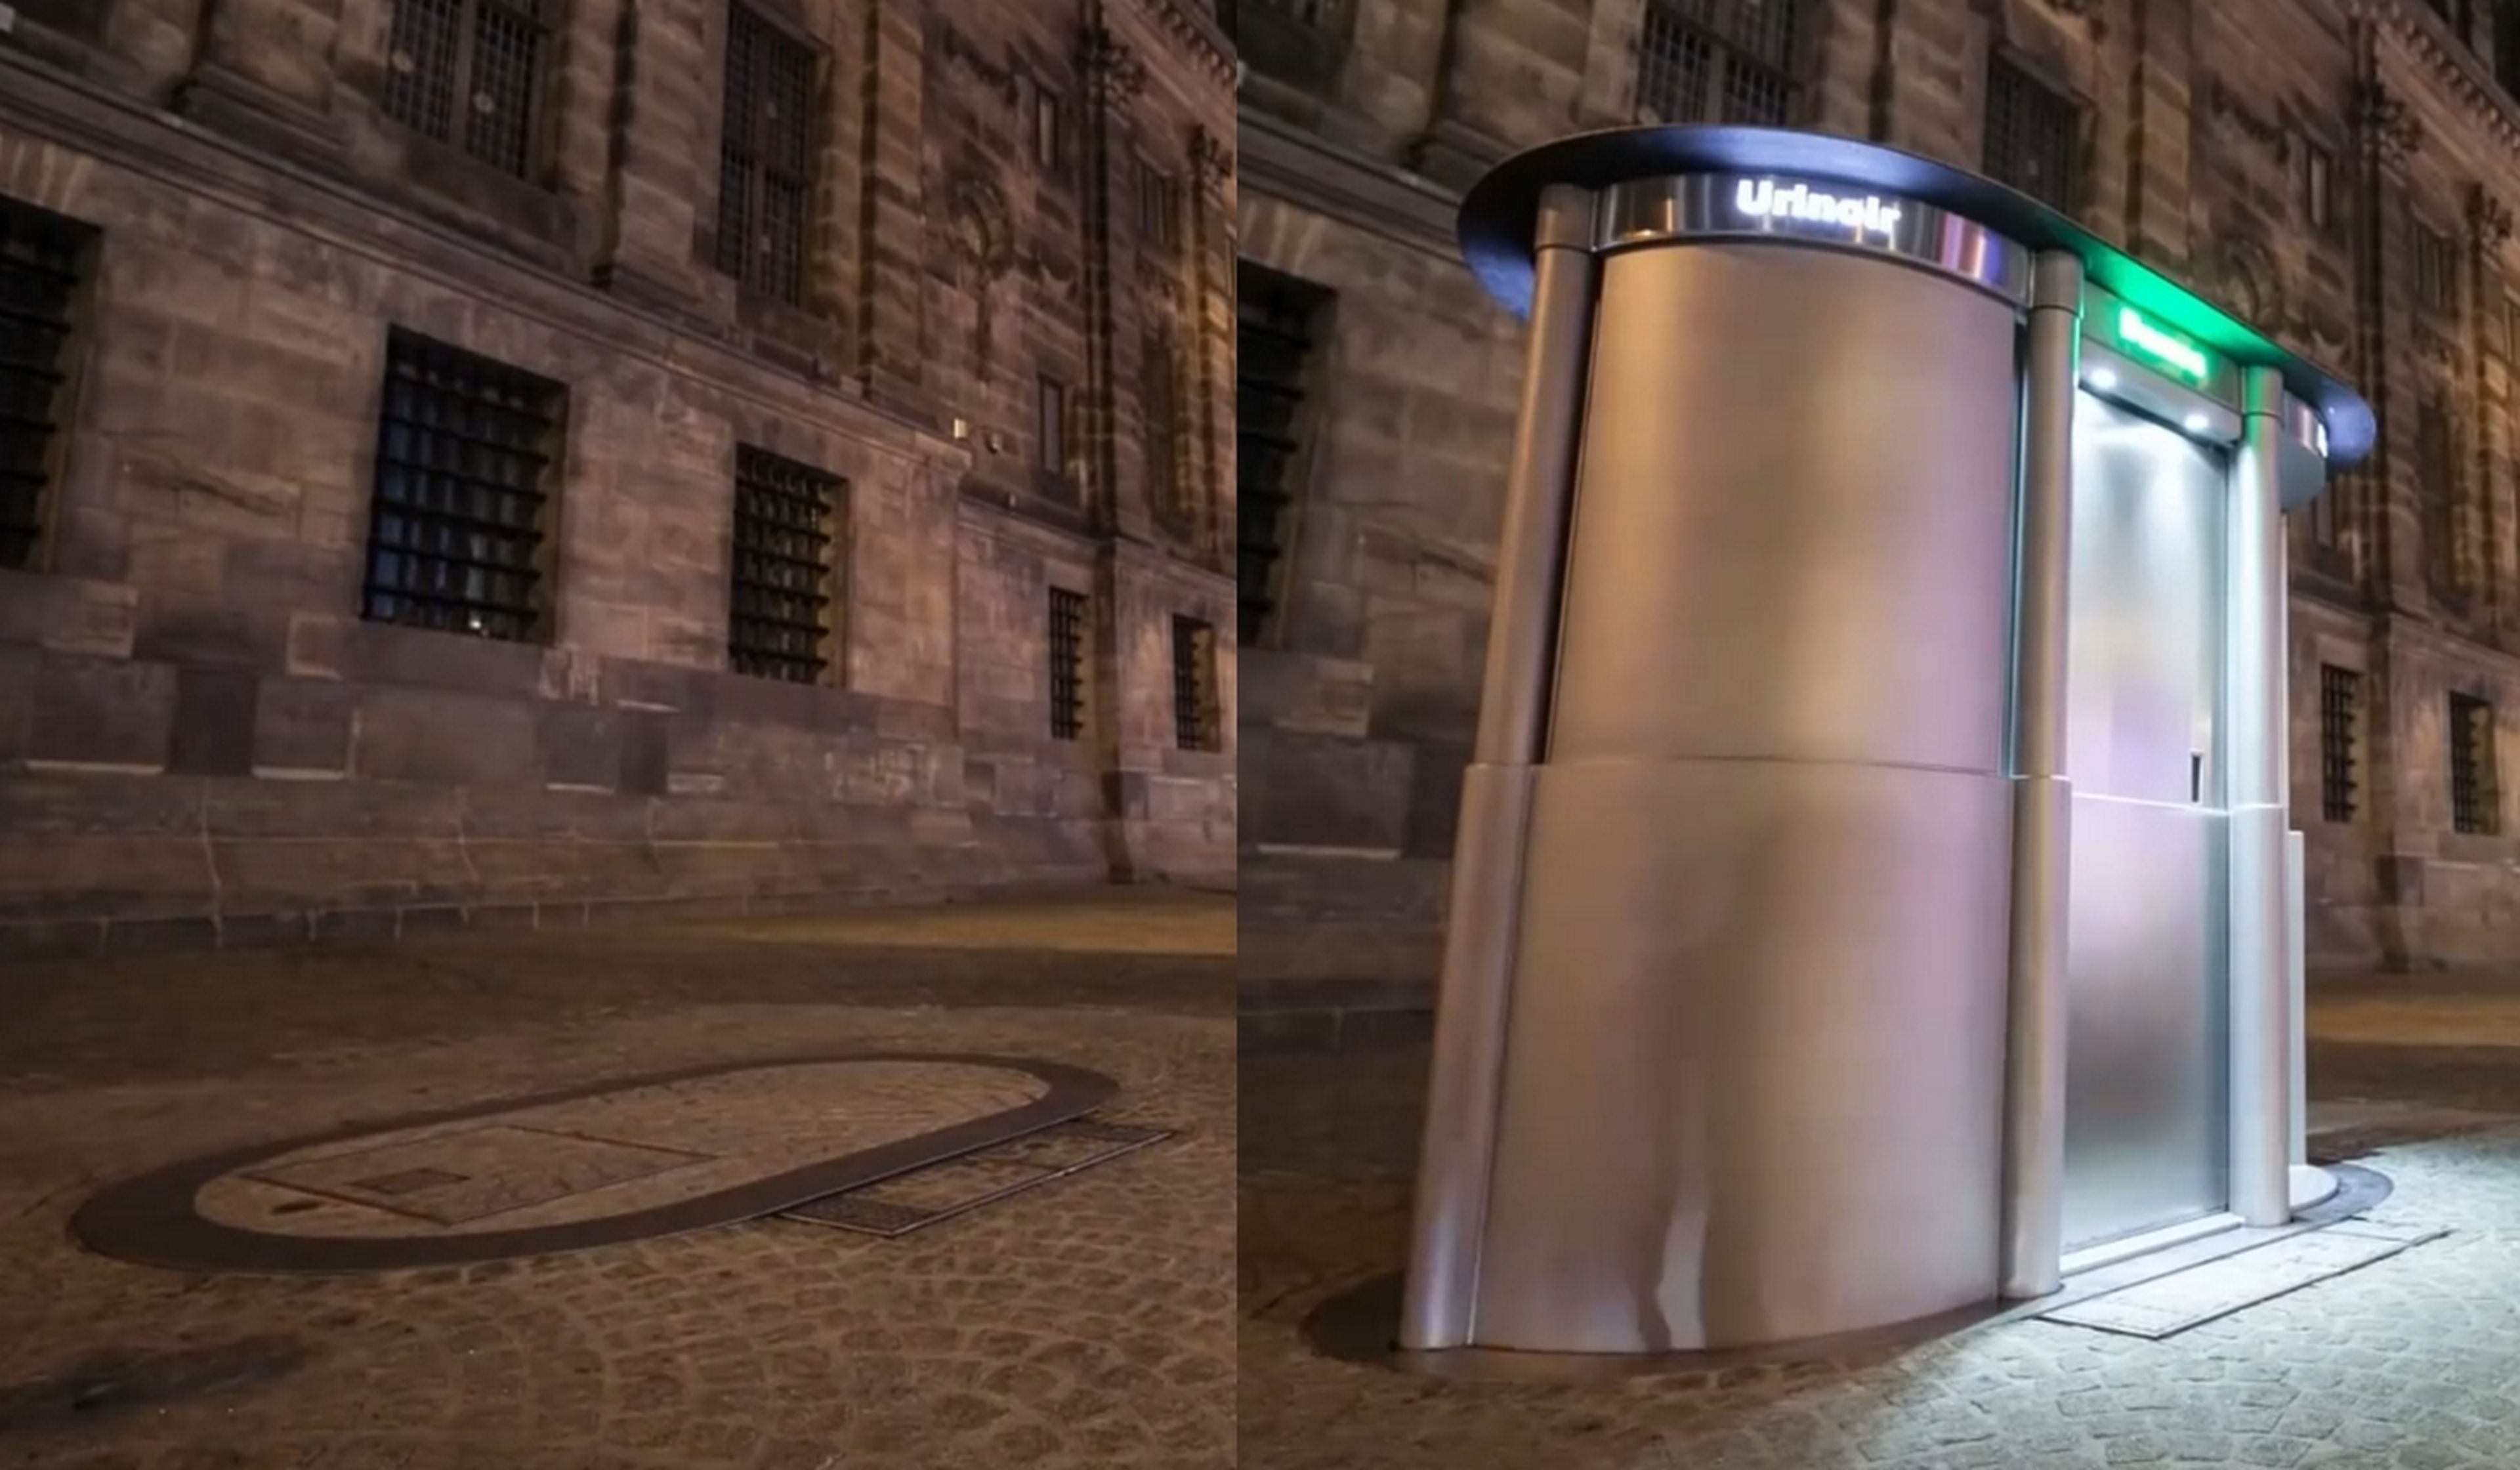 Los urinarios callejeros pop-up que se esconden bajo el suelo y salen a la superficie por la noche